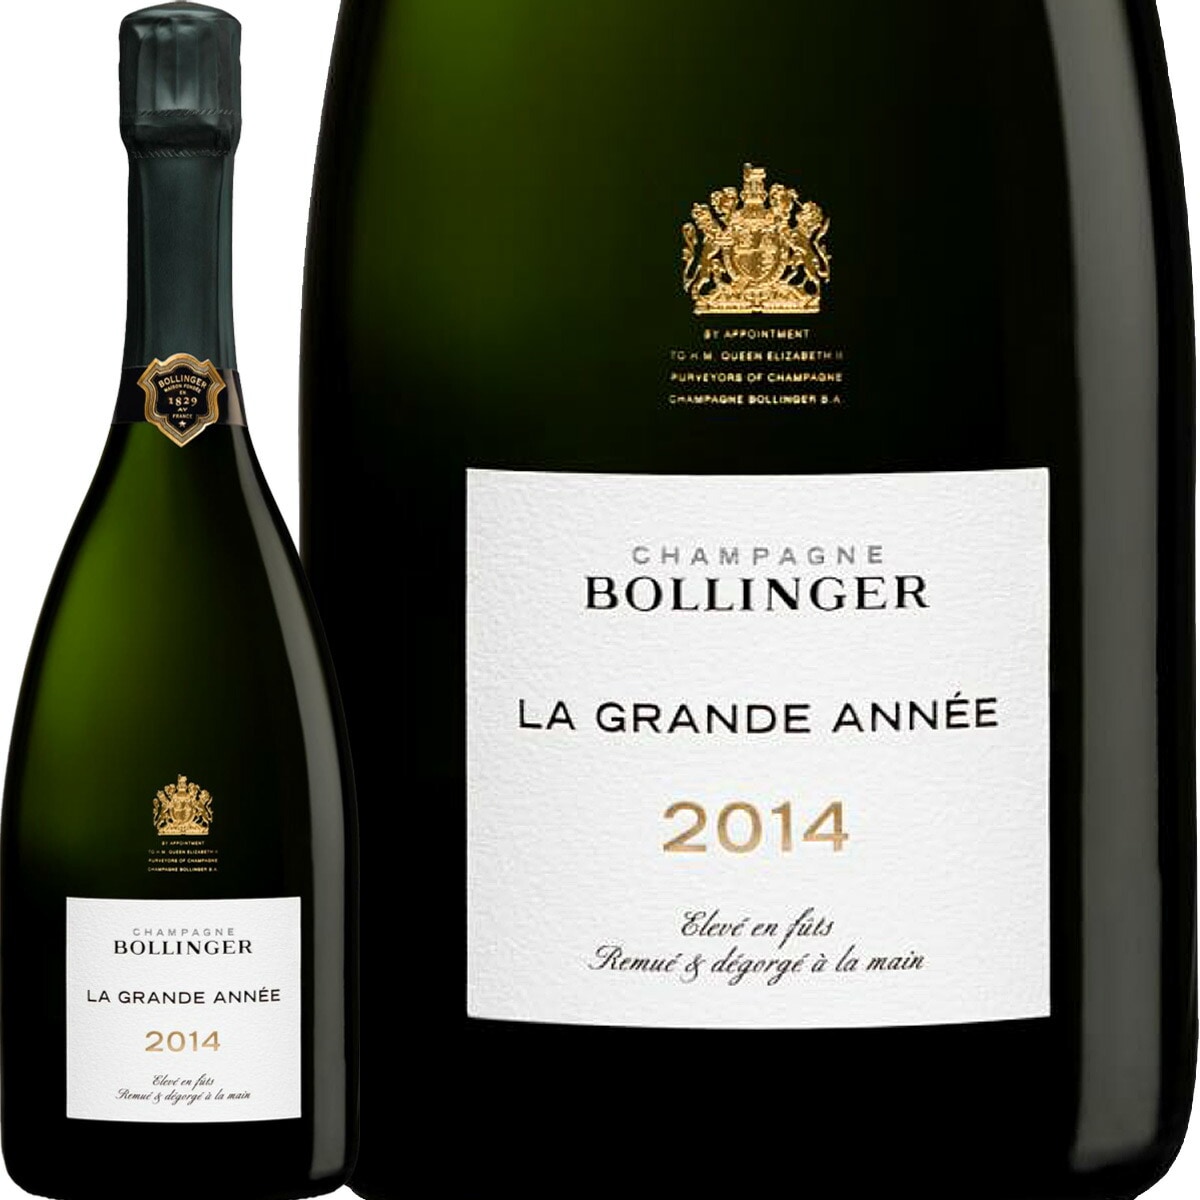 シャンパーニュ・ボランジェ・ラ・グランダネ 2014（箱なし）【シャンパン】【750ml】【正規品】【Bollinger】【La Grande